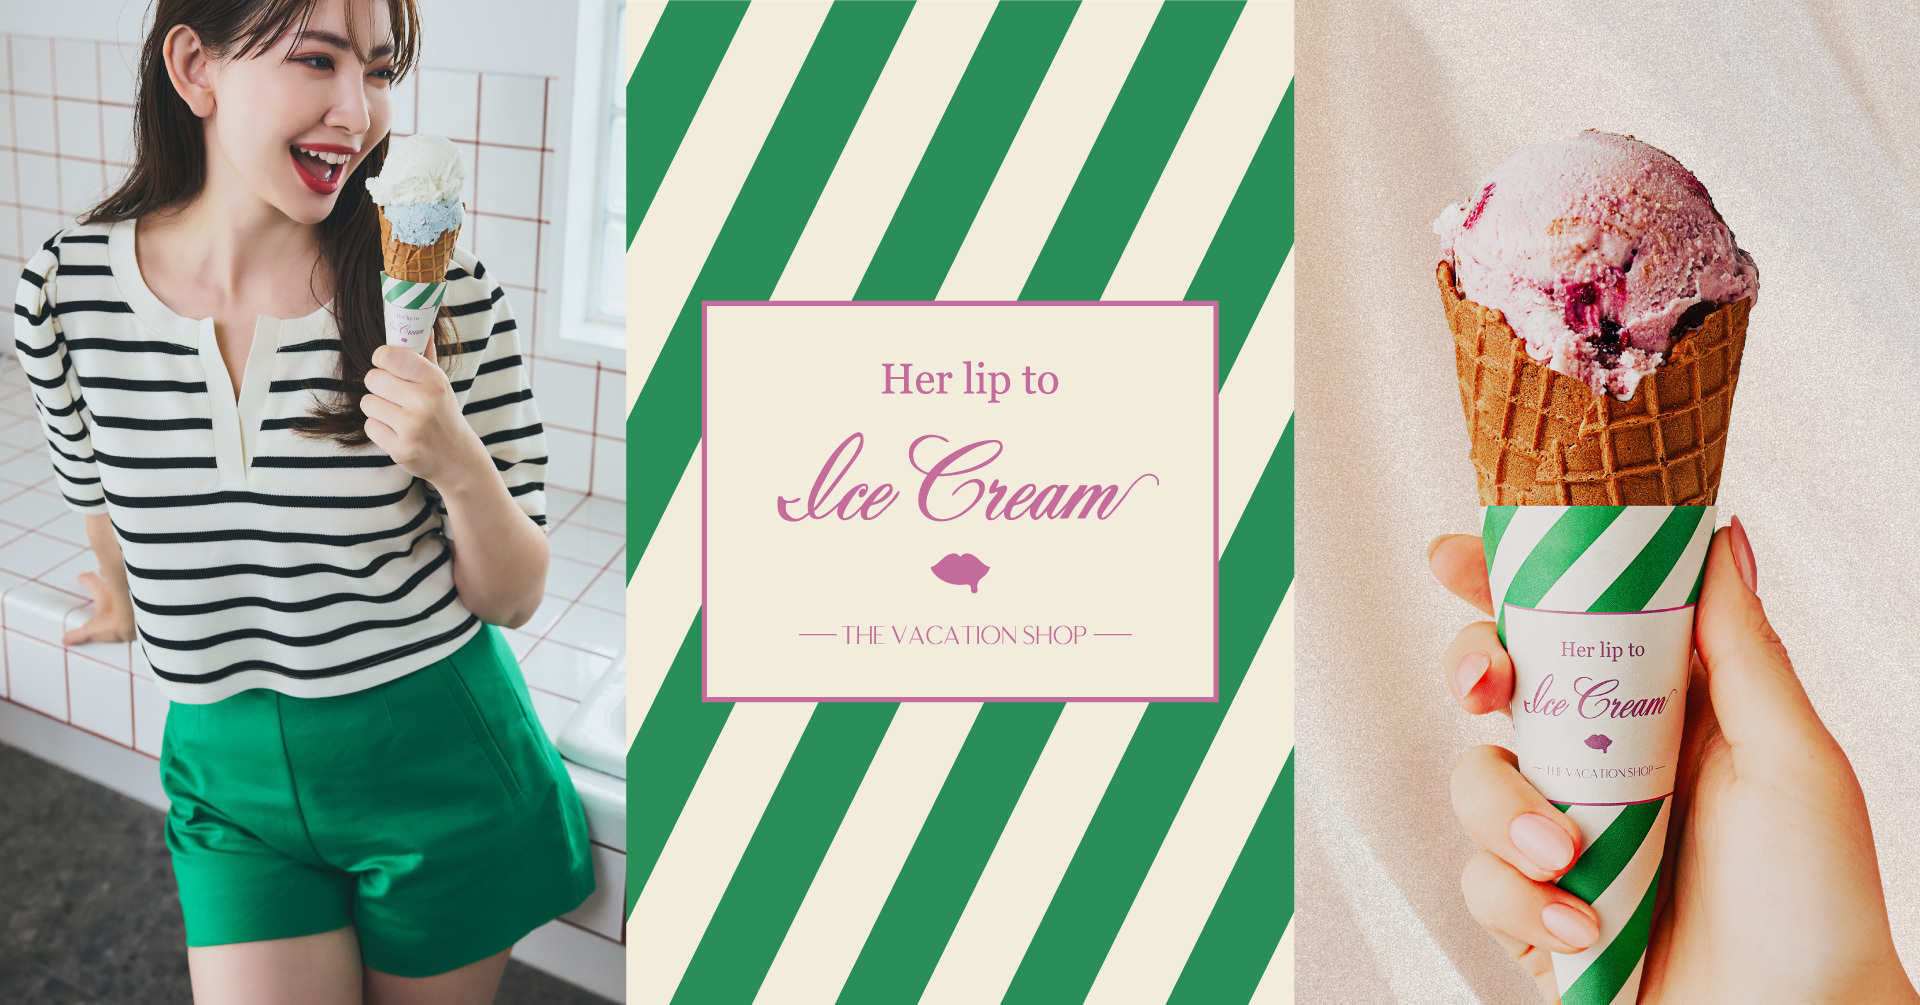 小嶋陽菜プロデュース「Her lip to」からアイスクリームショップがOPEN！